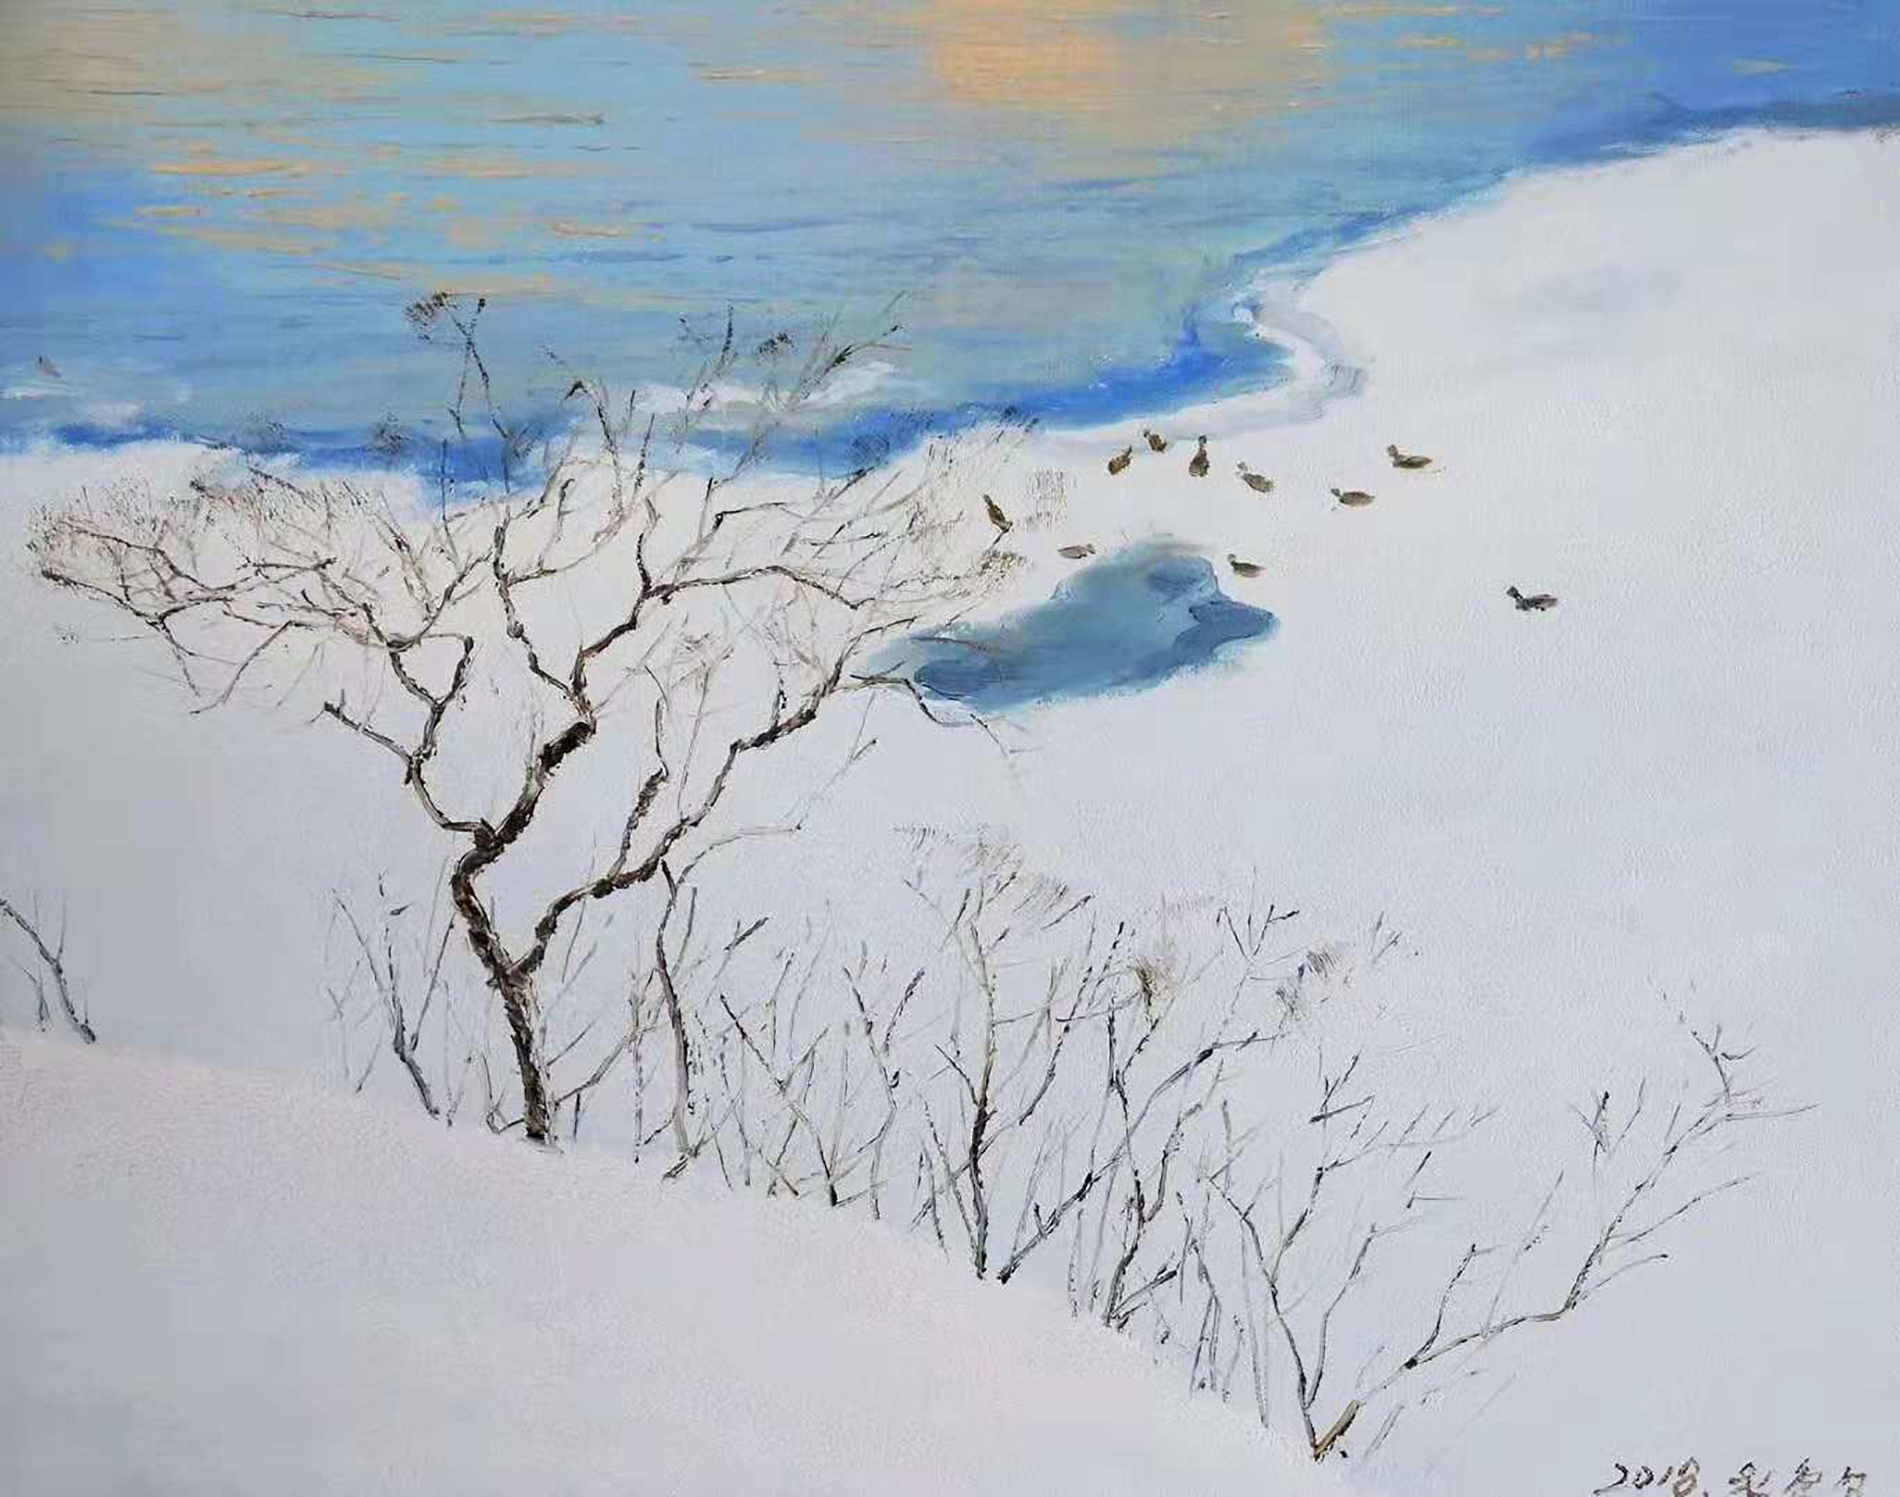 油画欣赏:画家笔下的冬天,冰雪风景是这样的美(二)